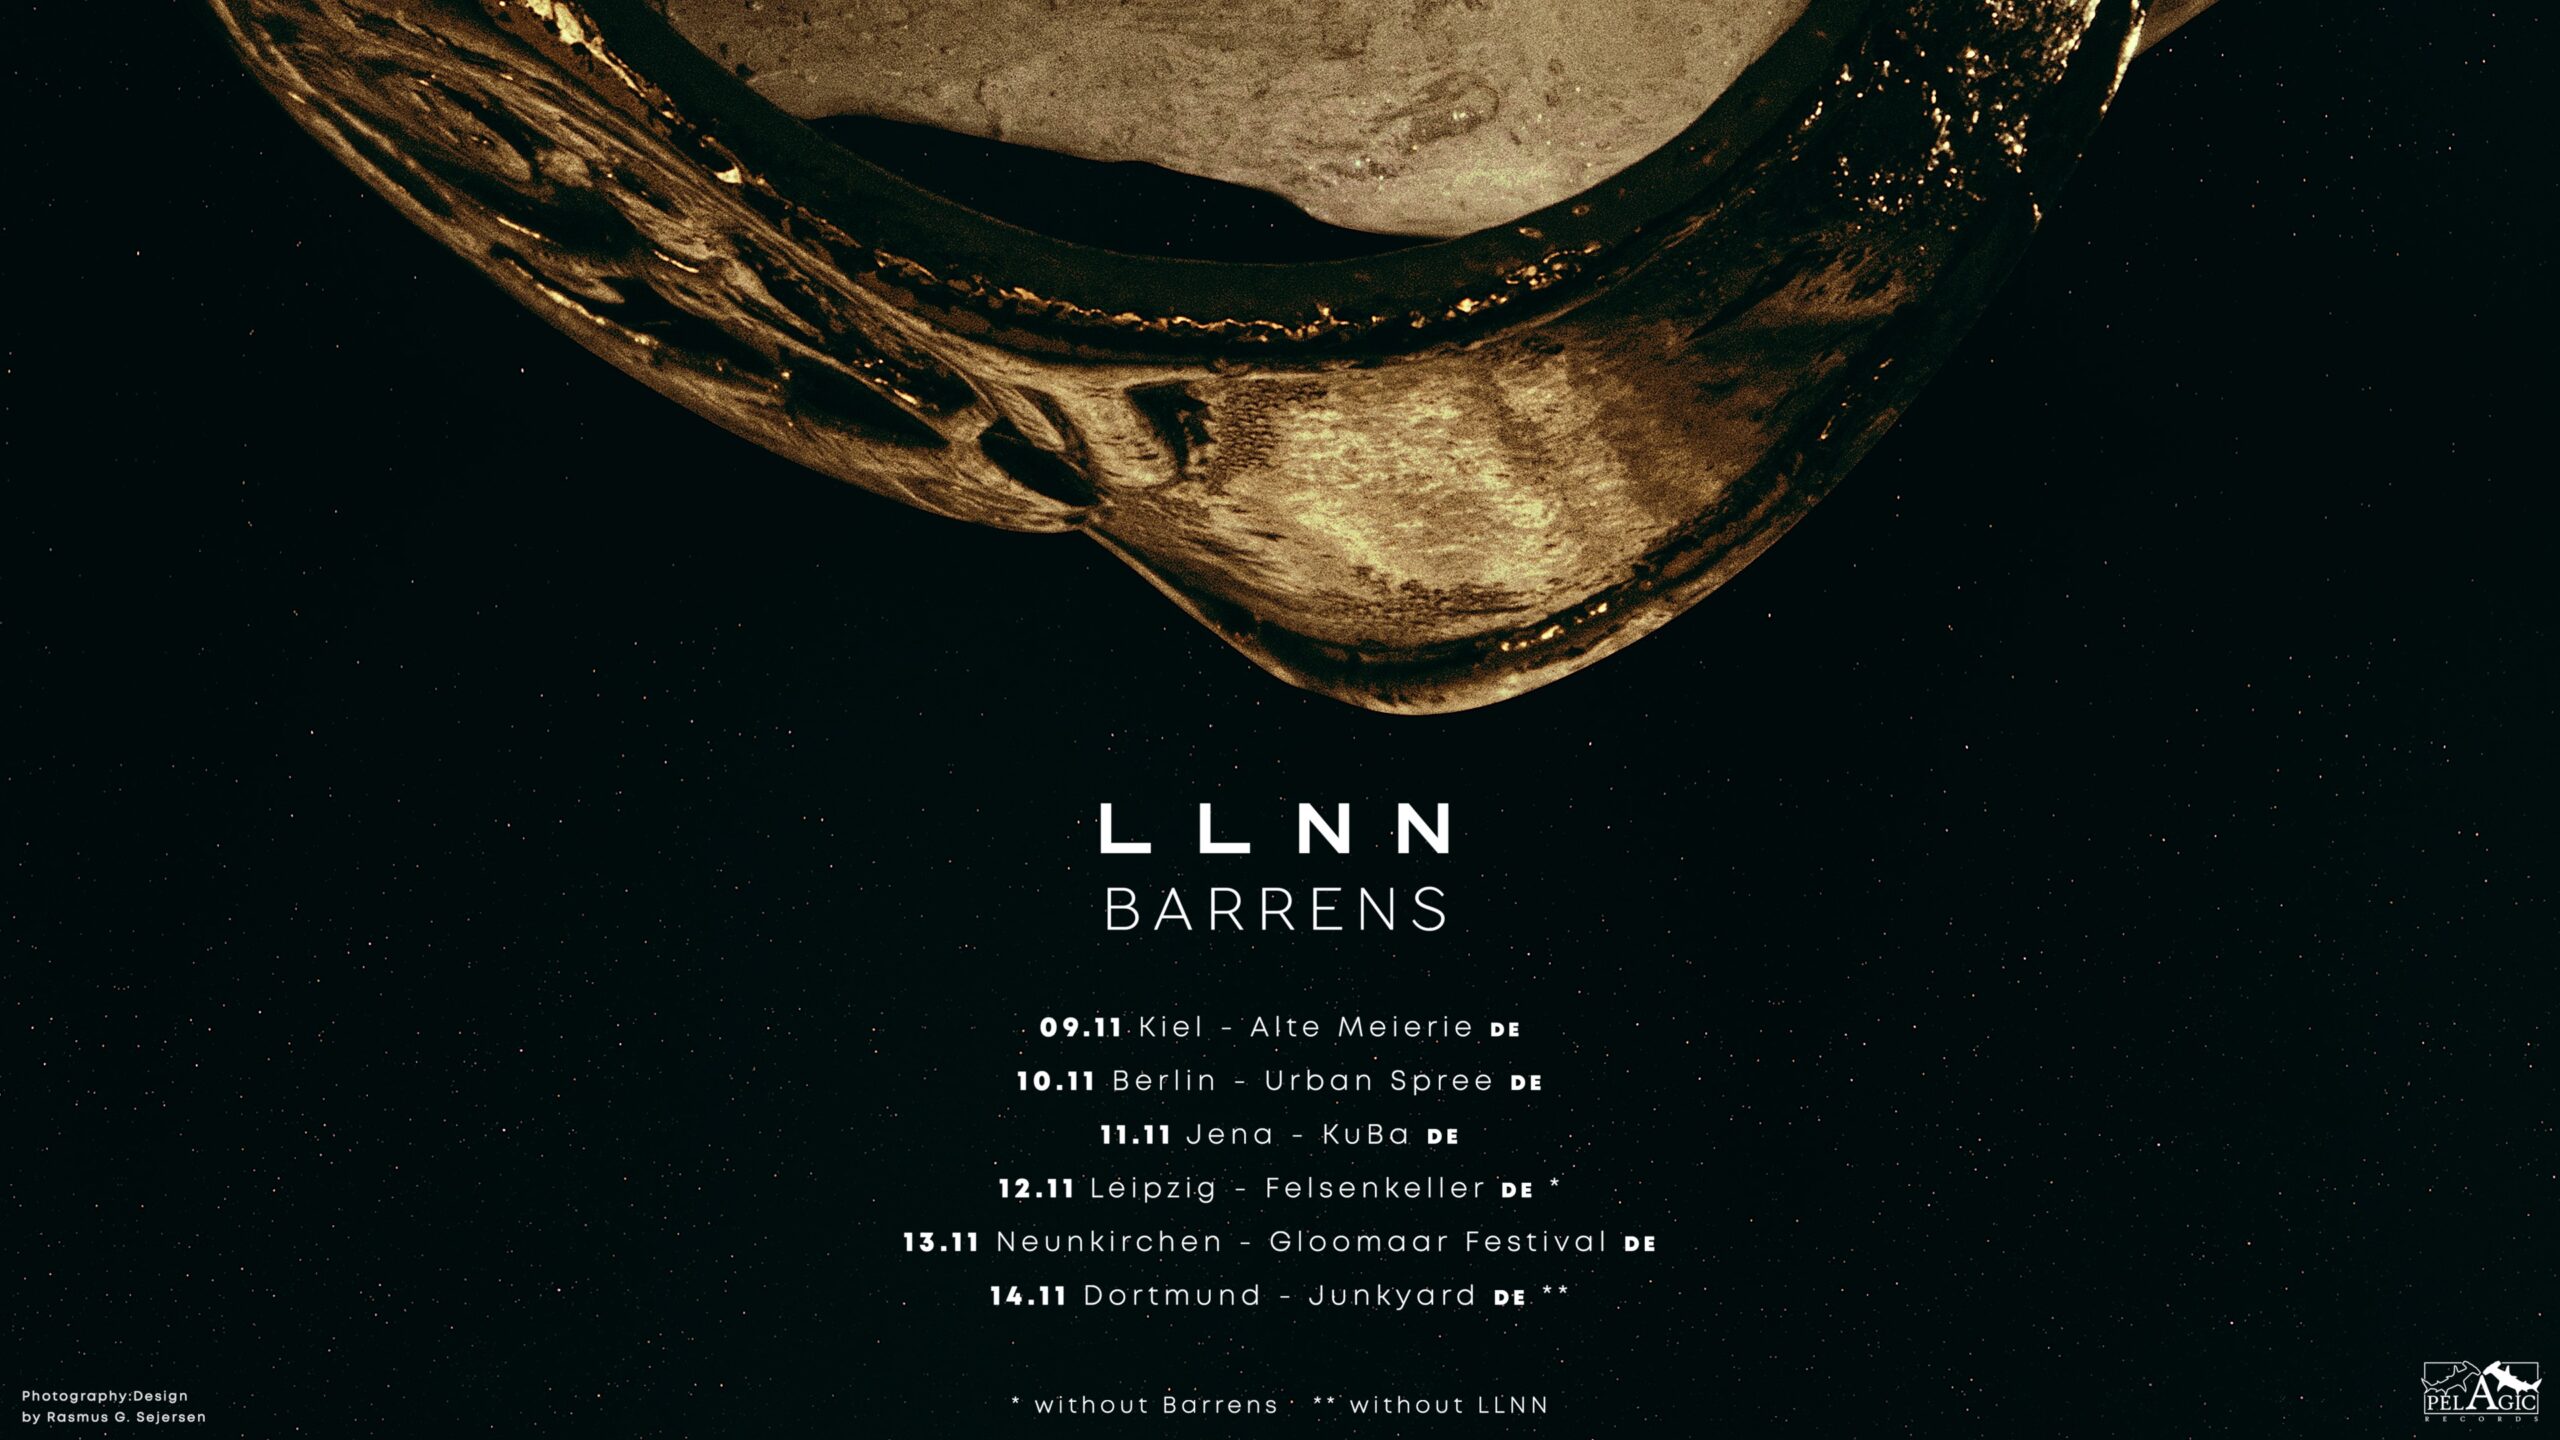 LLNN, Barrens (2G!)